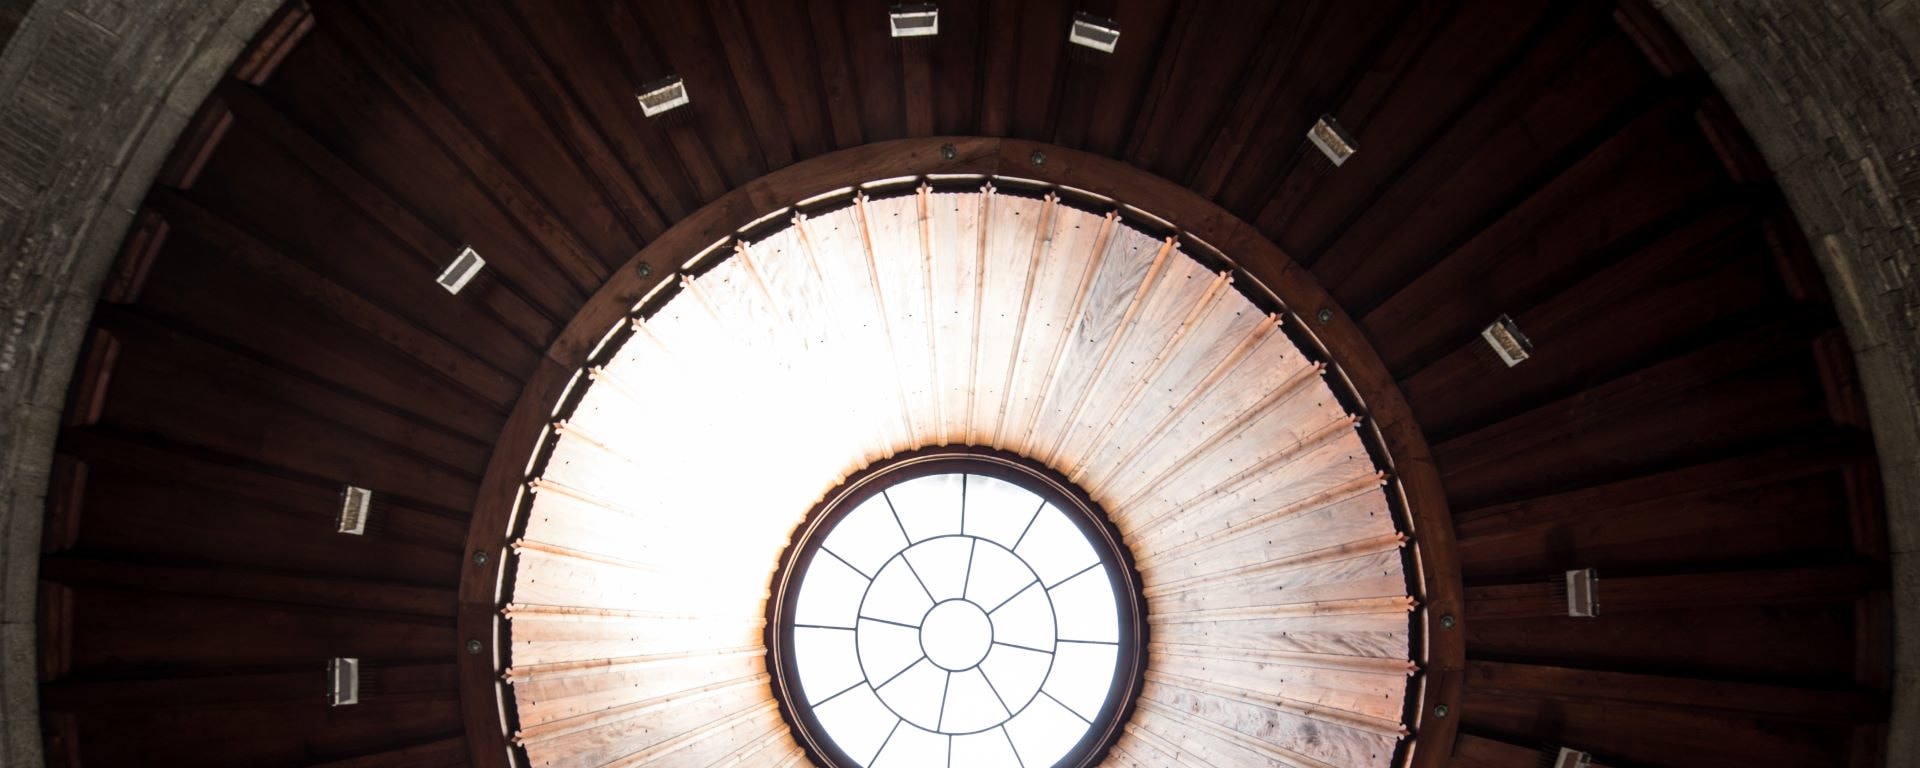 Primo piano architettonico di un lucernario circolare in mezzo a un soffitto a cupola in legno con design geometrico